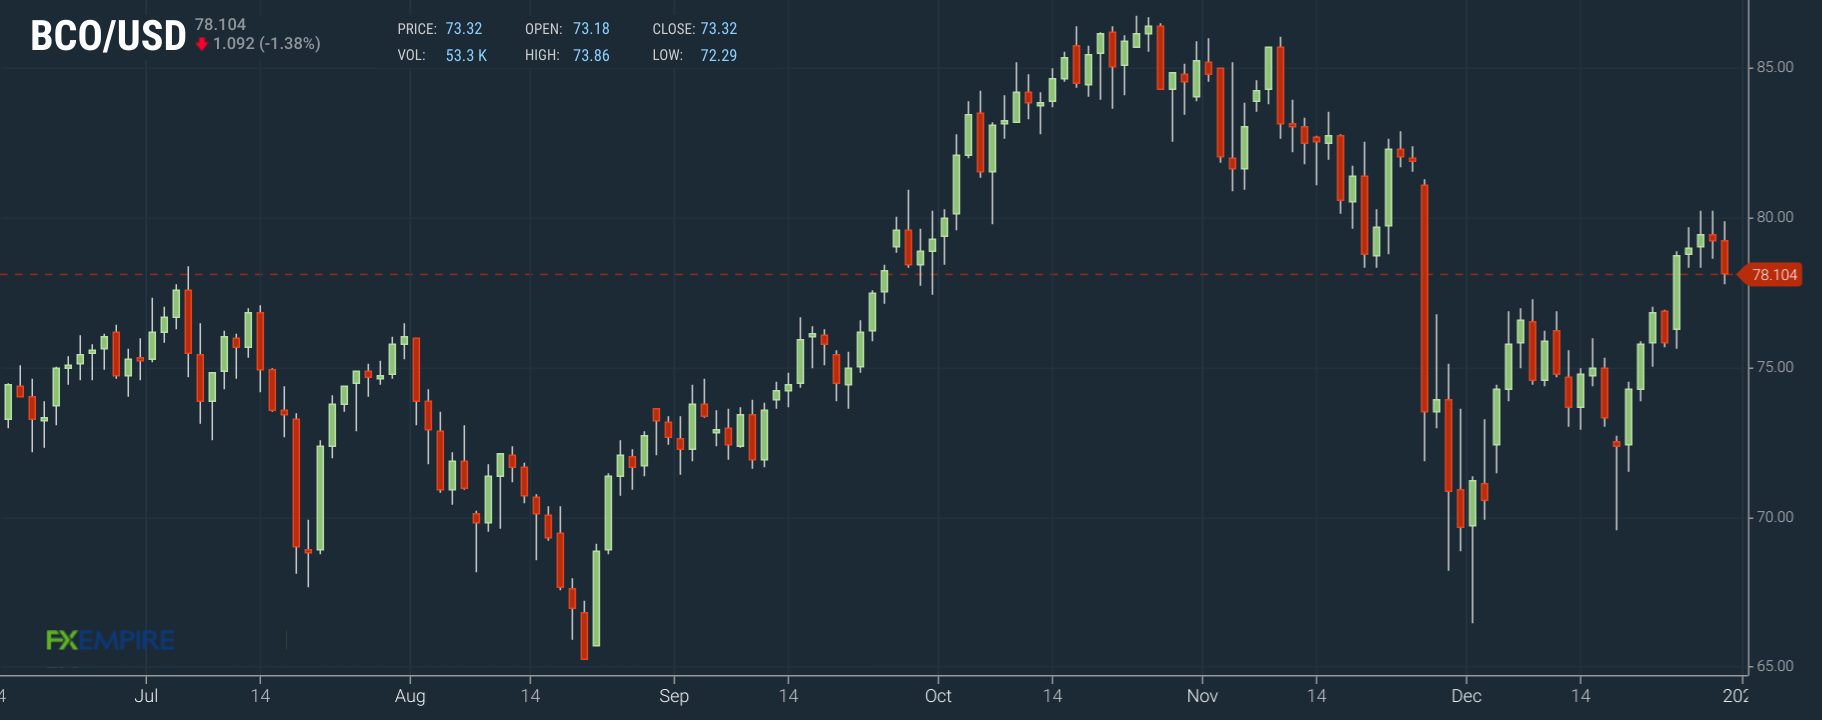 Ölpreis Brent Tages-Chart